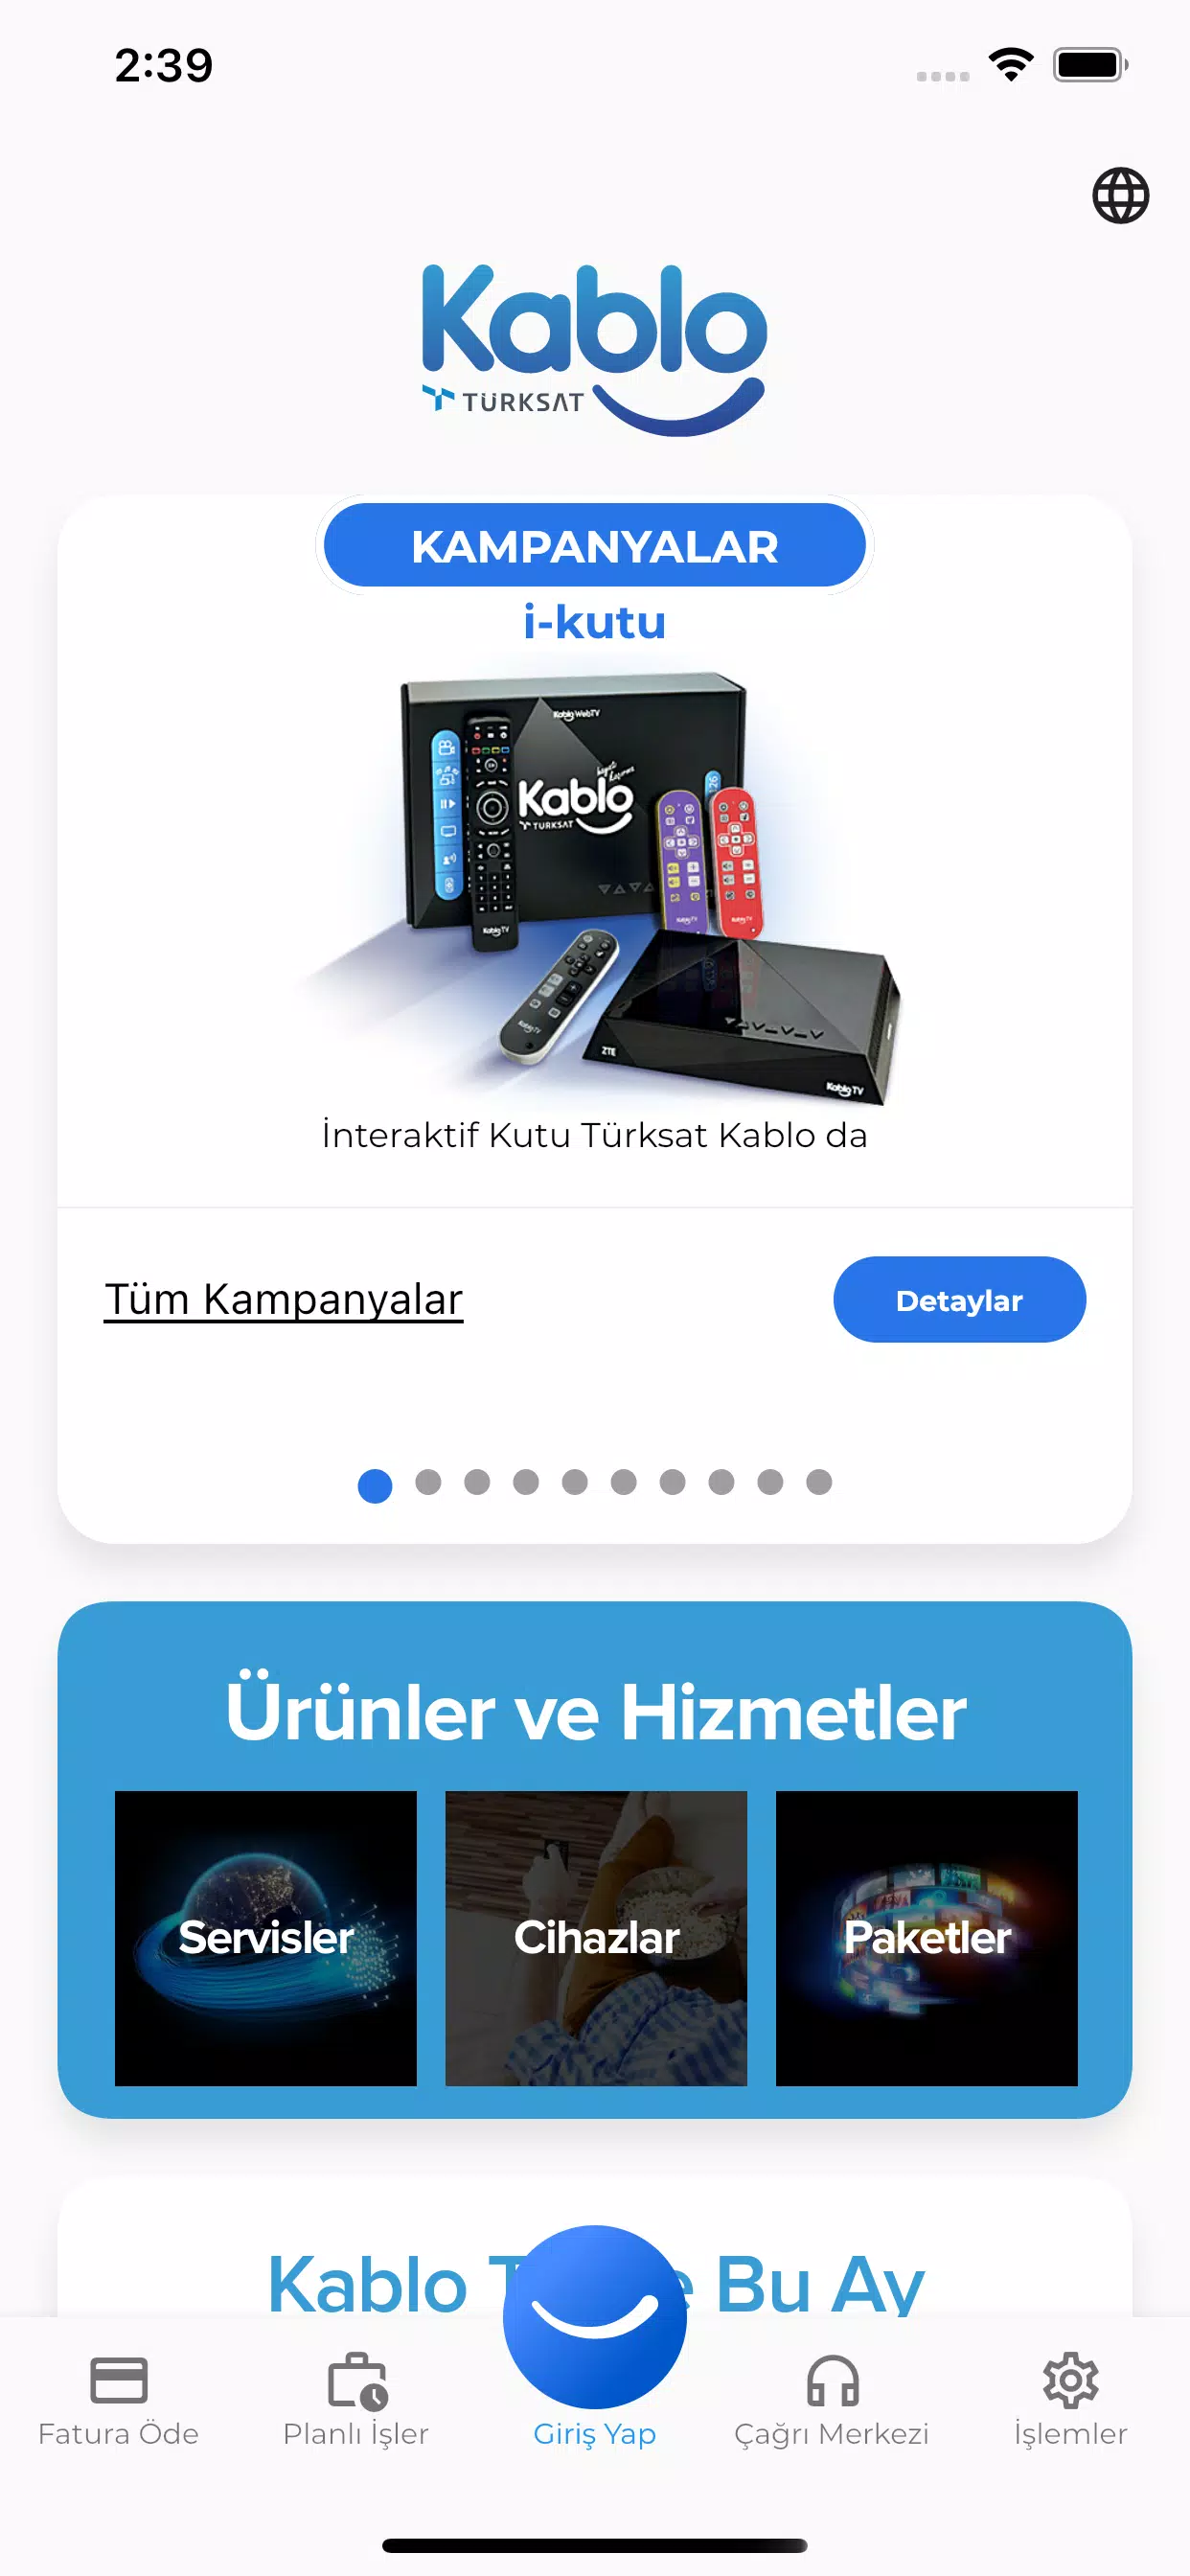 Türksat Kablo安卓版应用APK下载